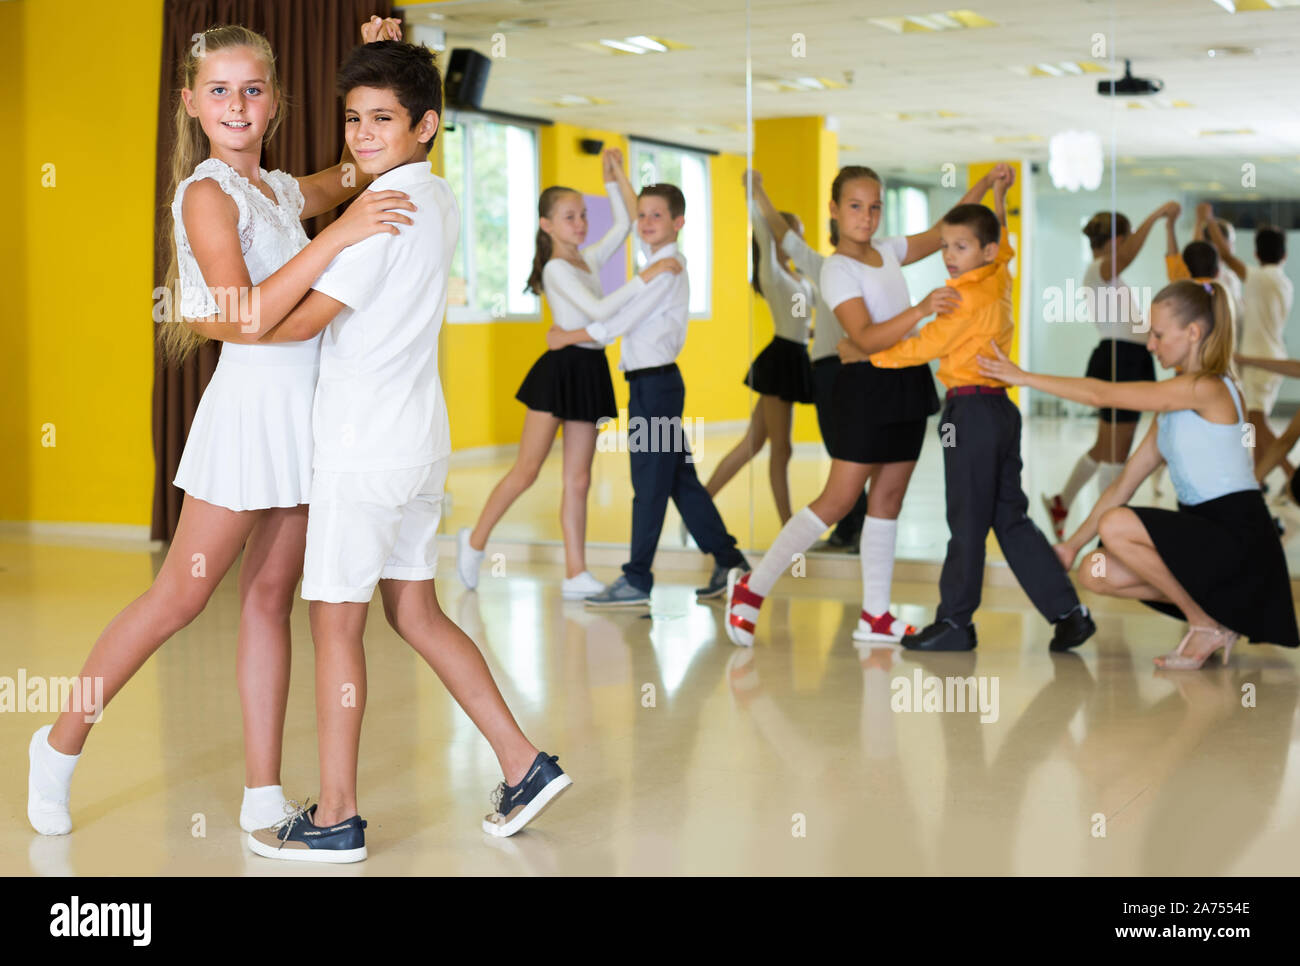 Les enfants russes souriants danser La danse en classe paire Banque D'Images